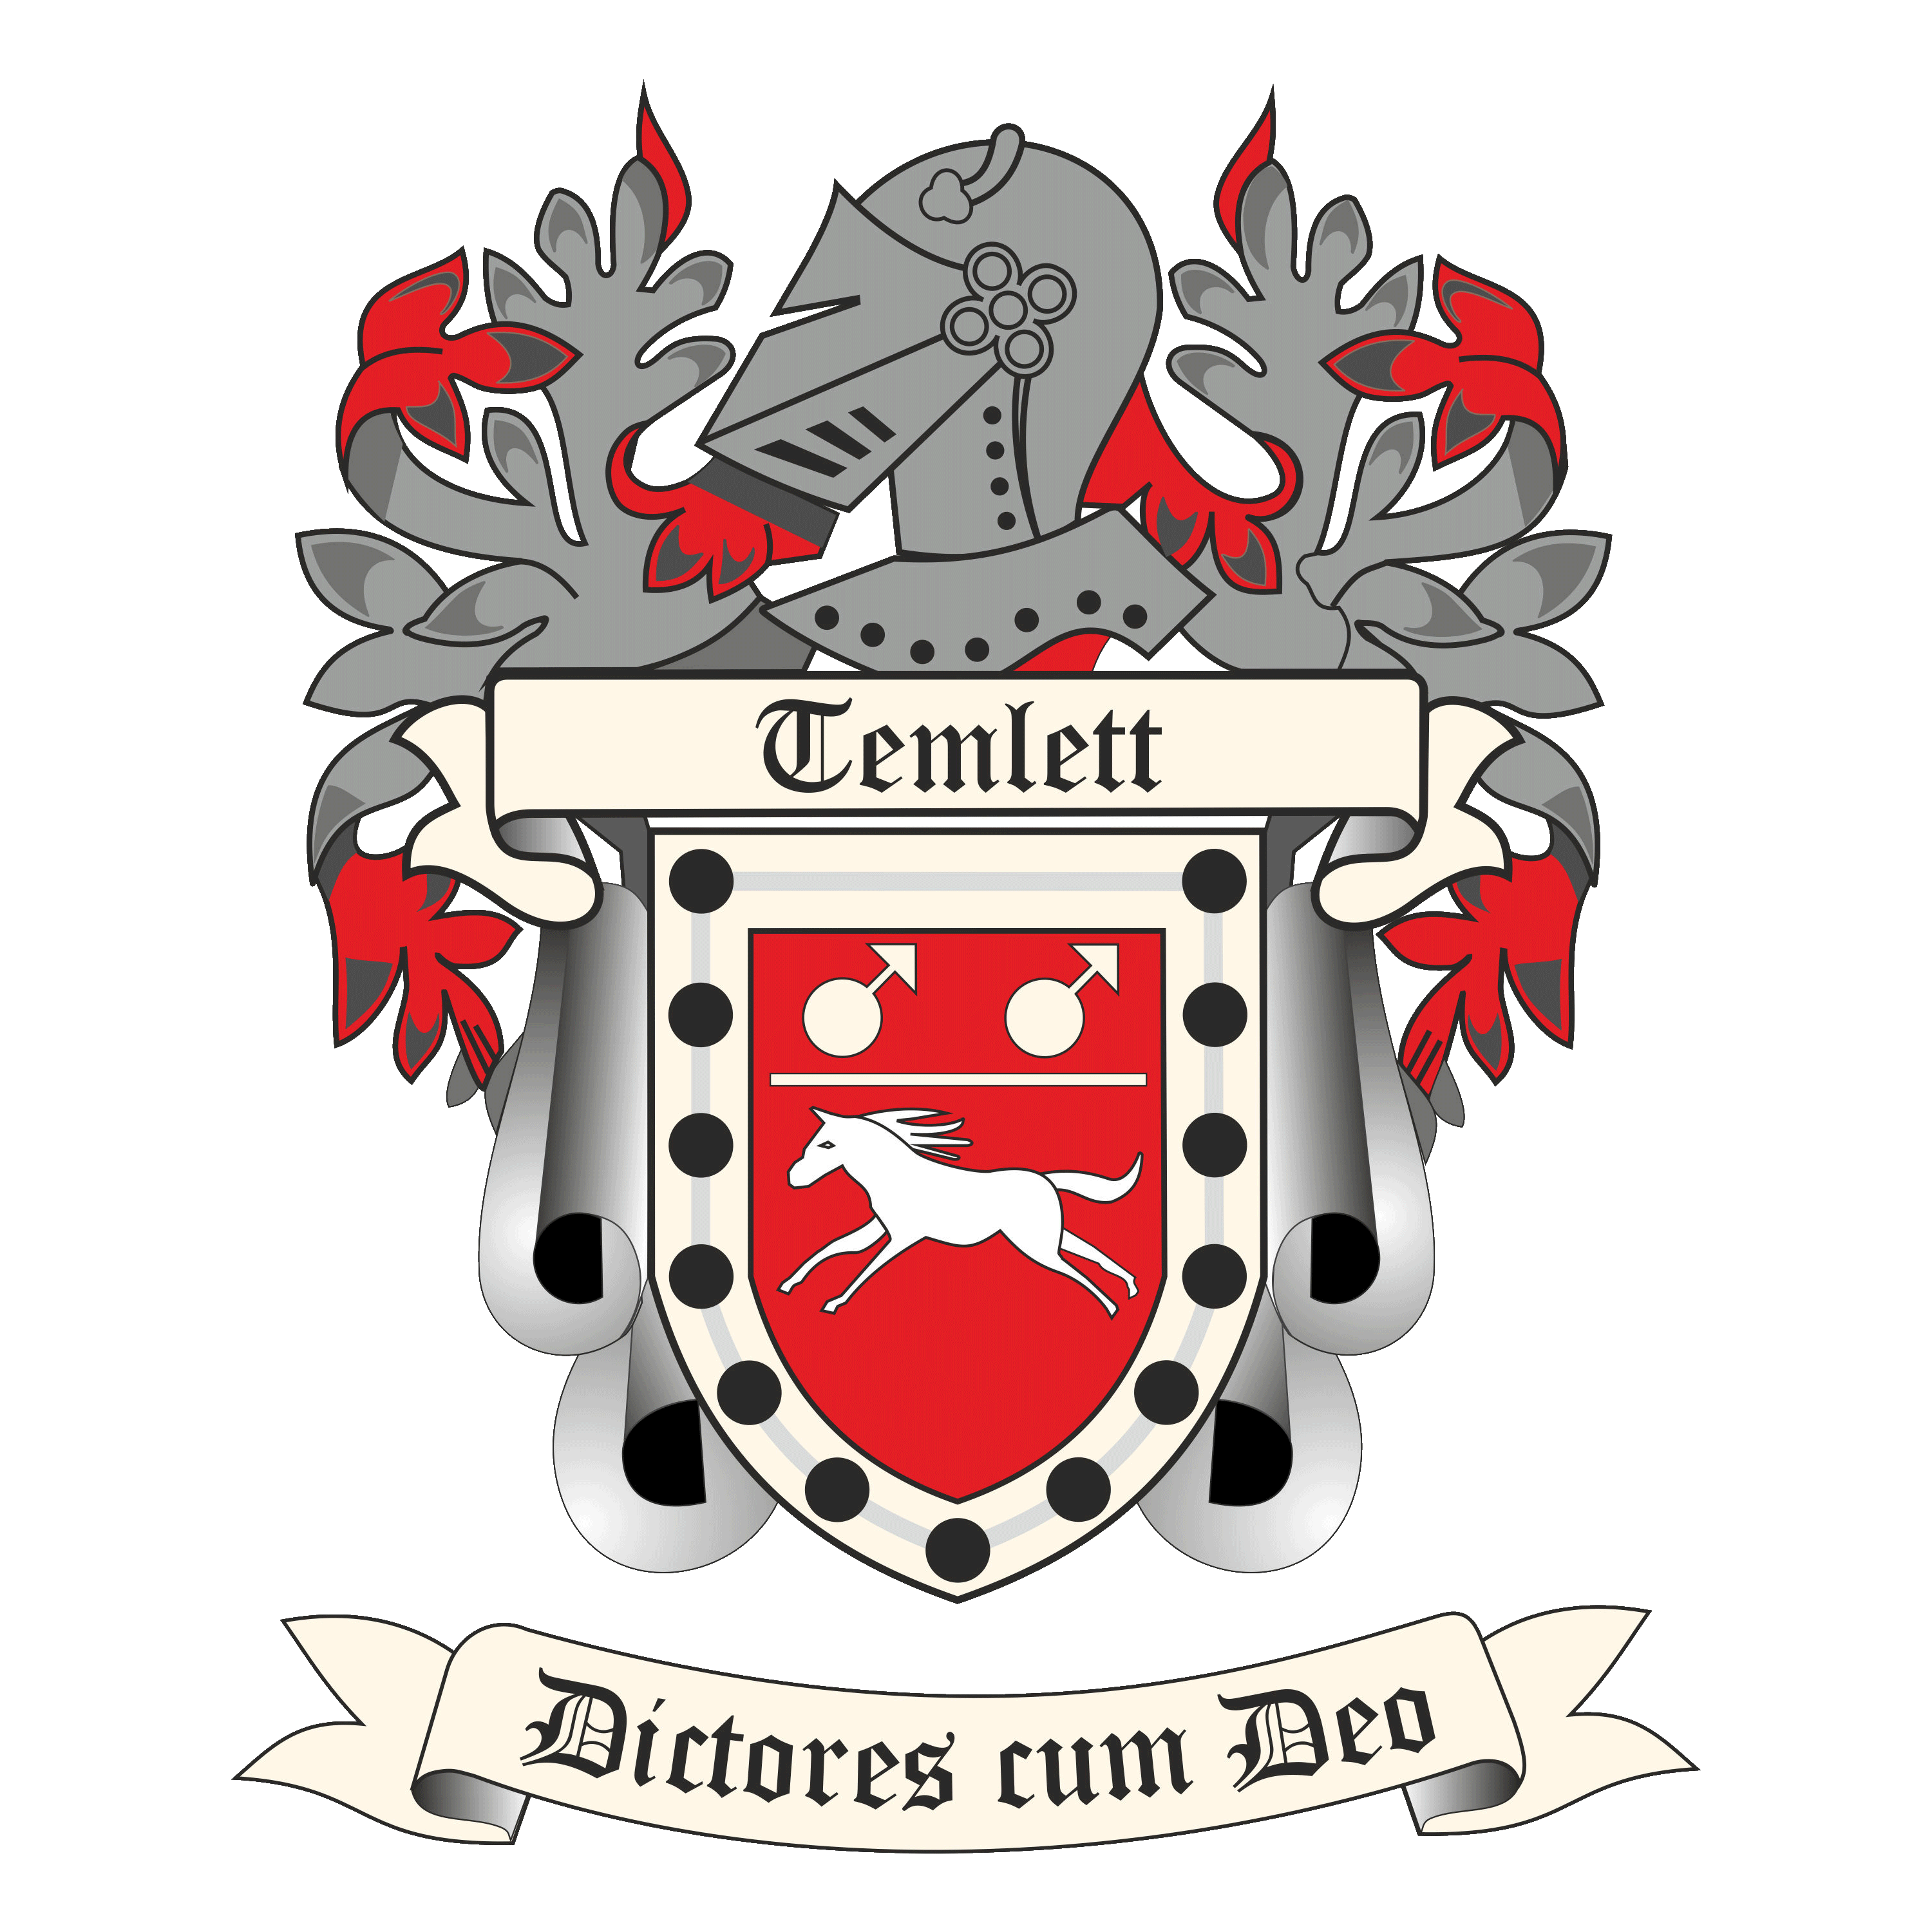 The Temlett Family crest